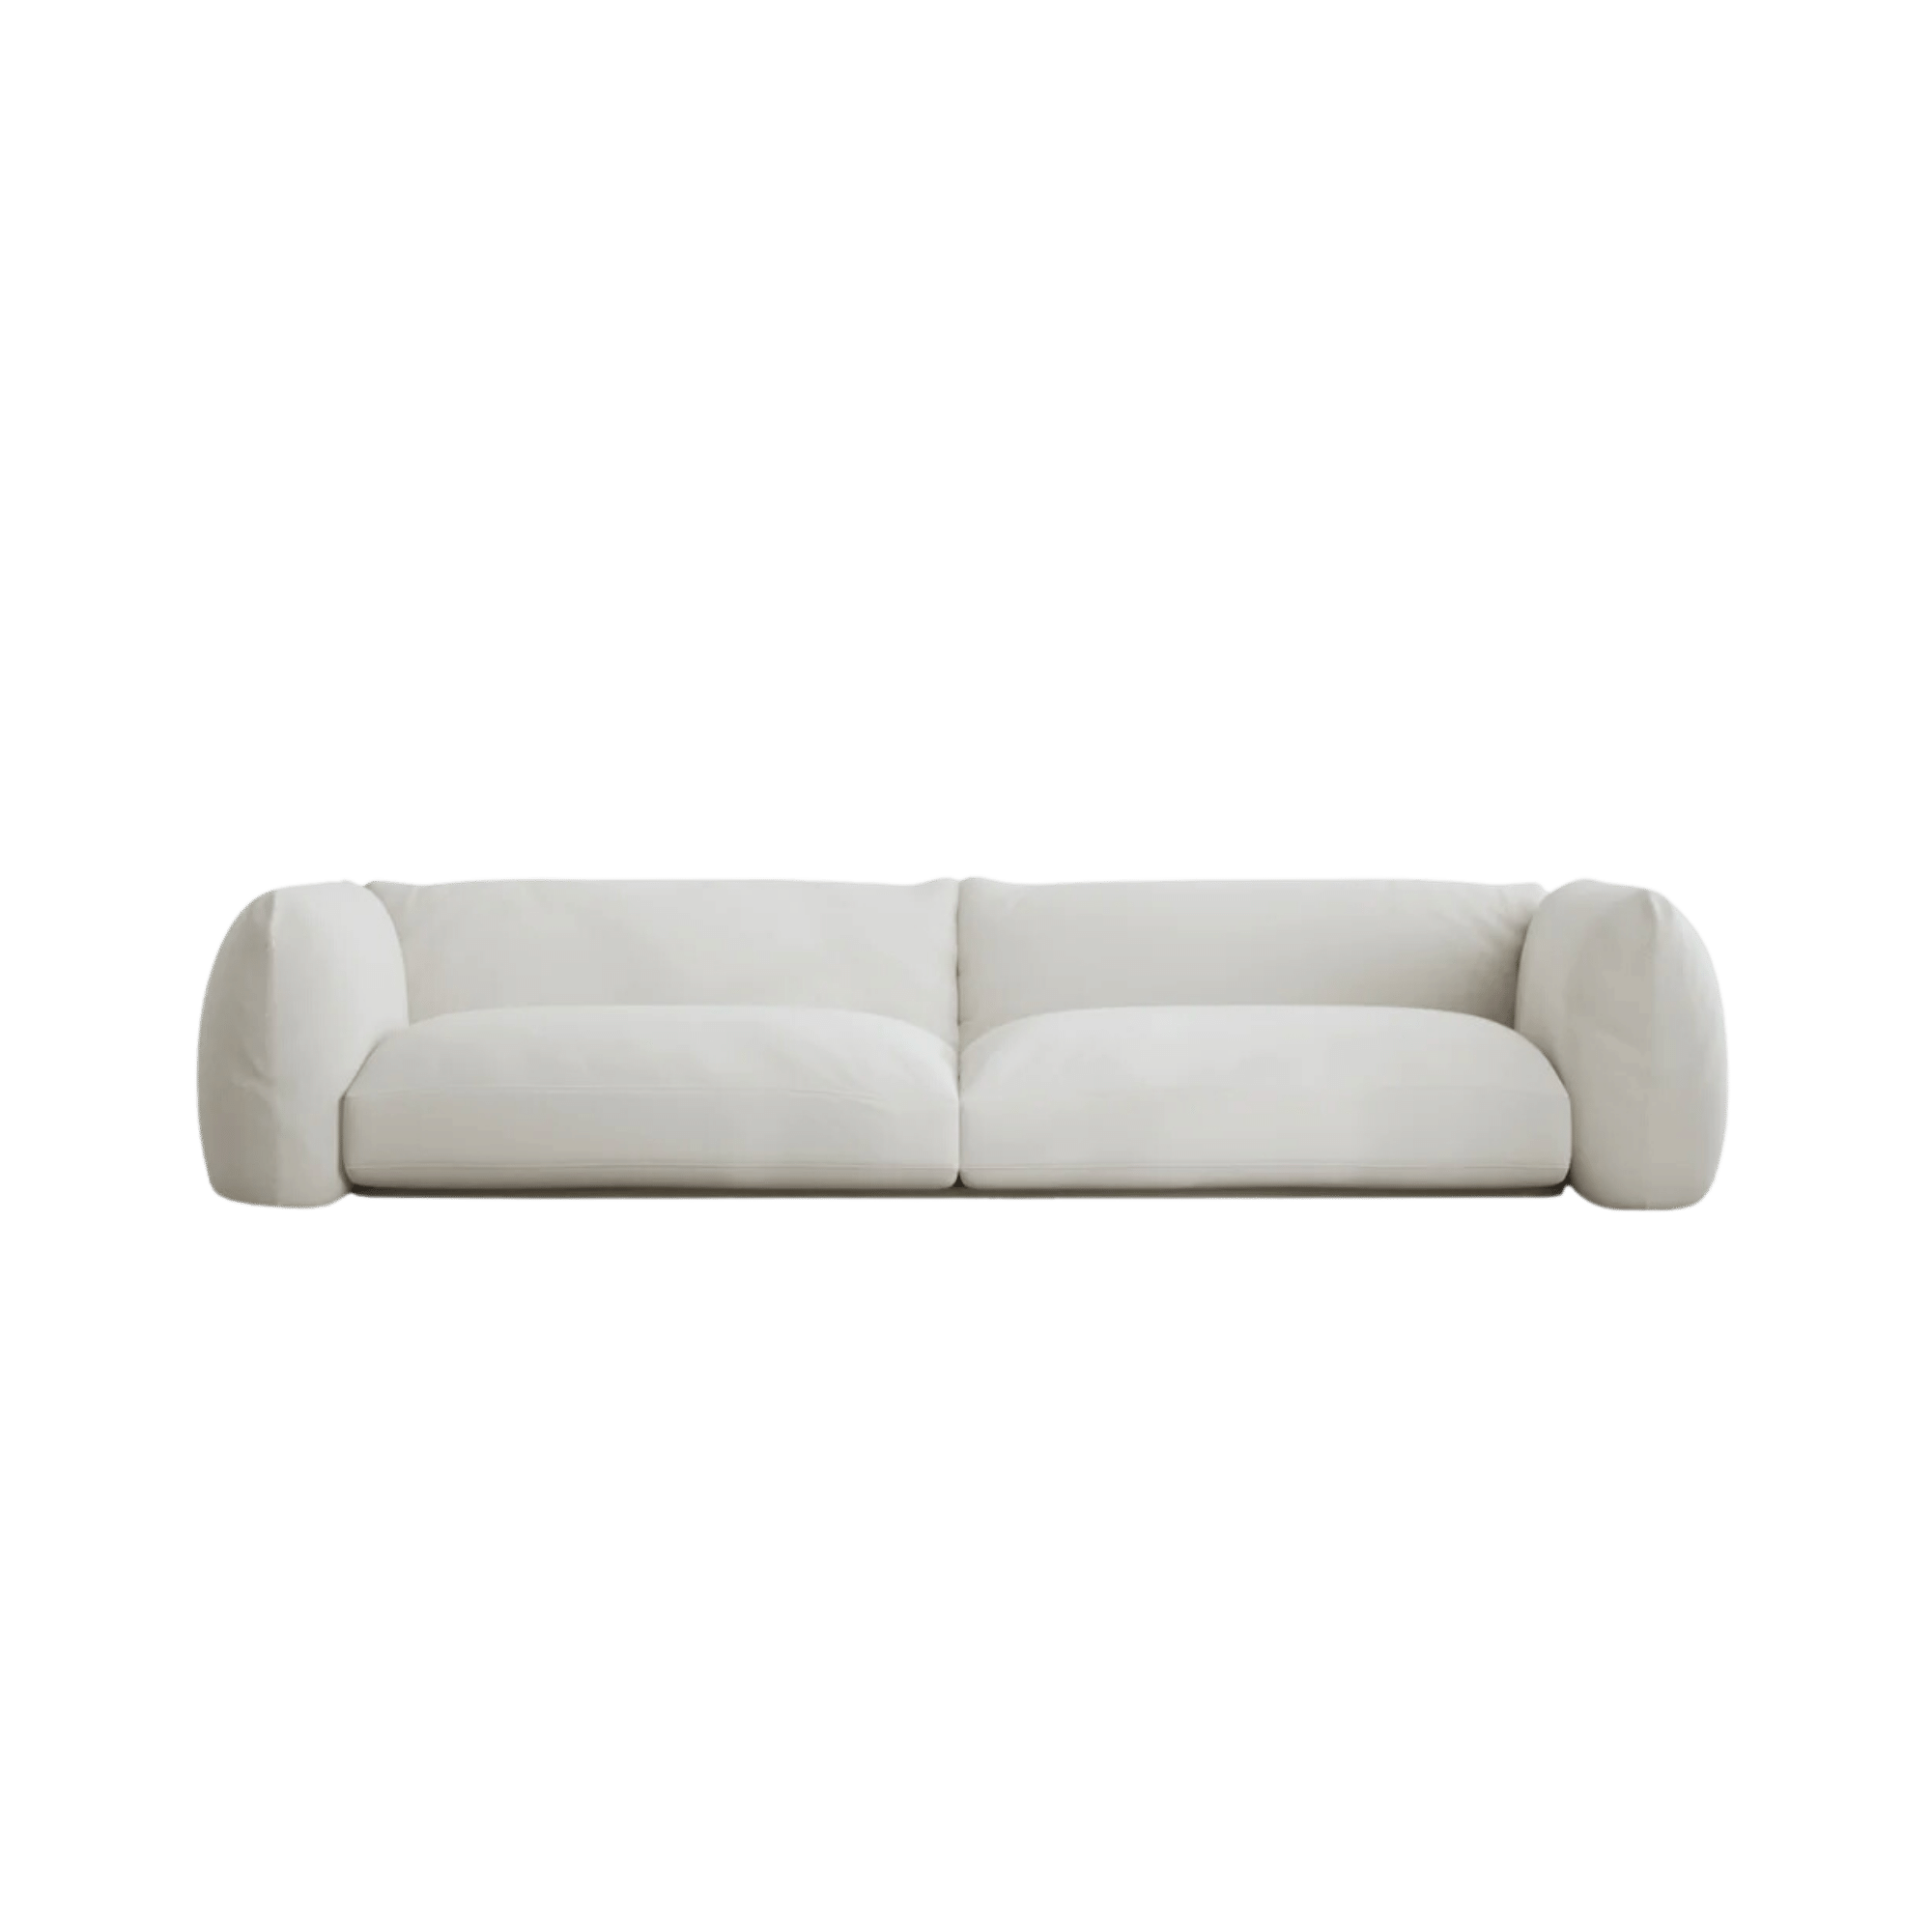 Lotta Agaton 3-Seater Sofa - Linen